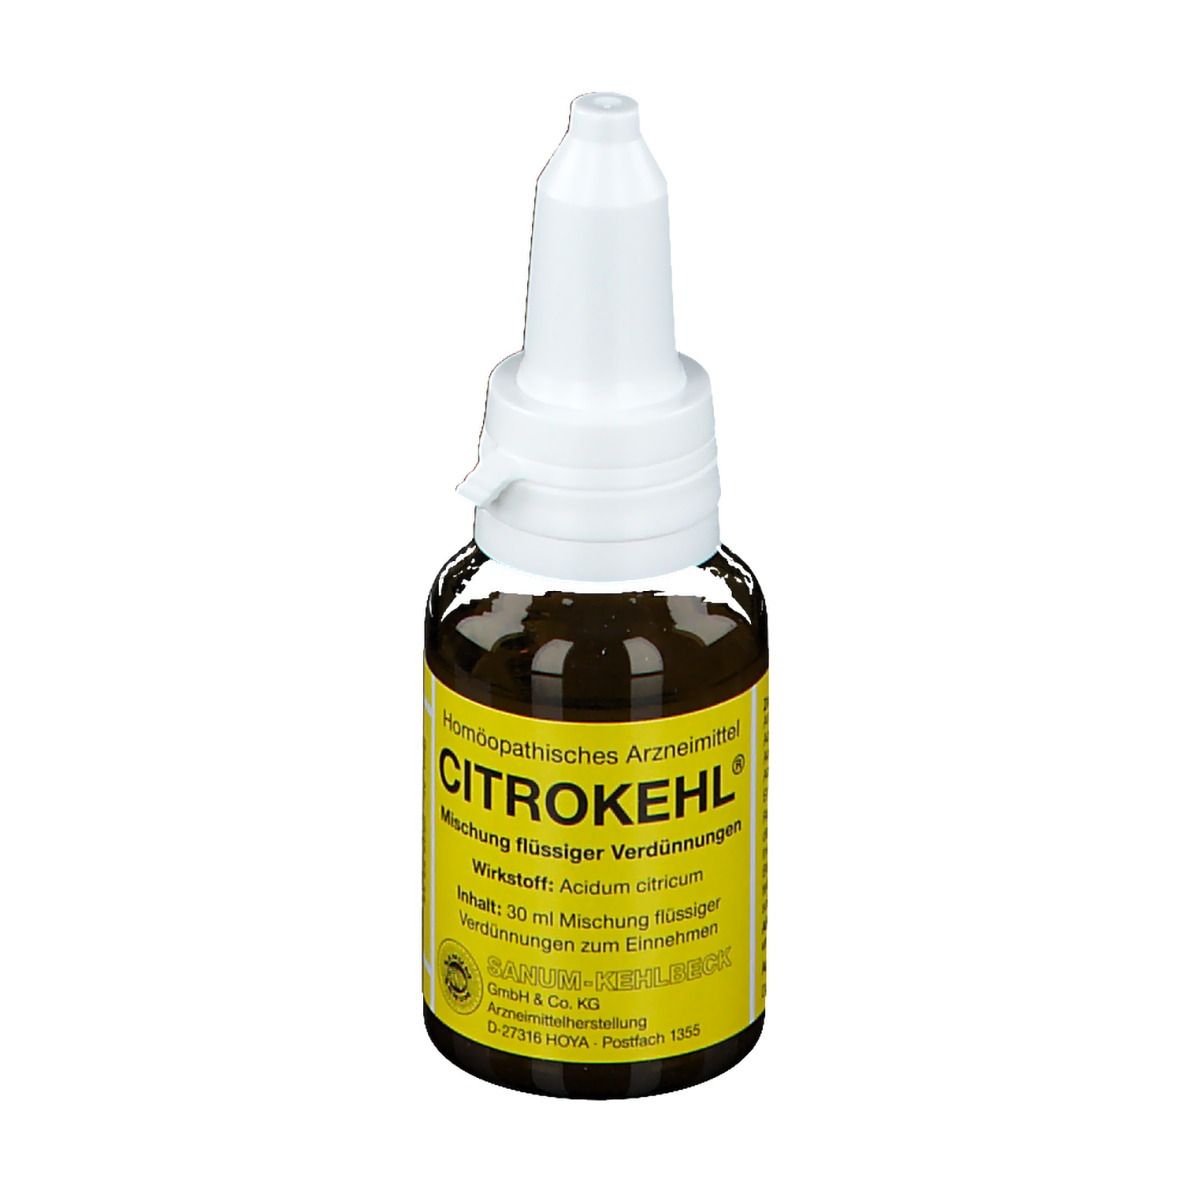 Citrokehl® Mischung flüssiger Verdünnungen